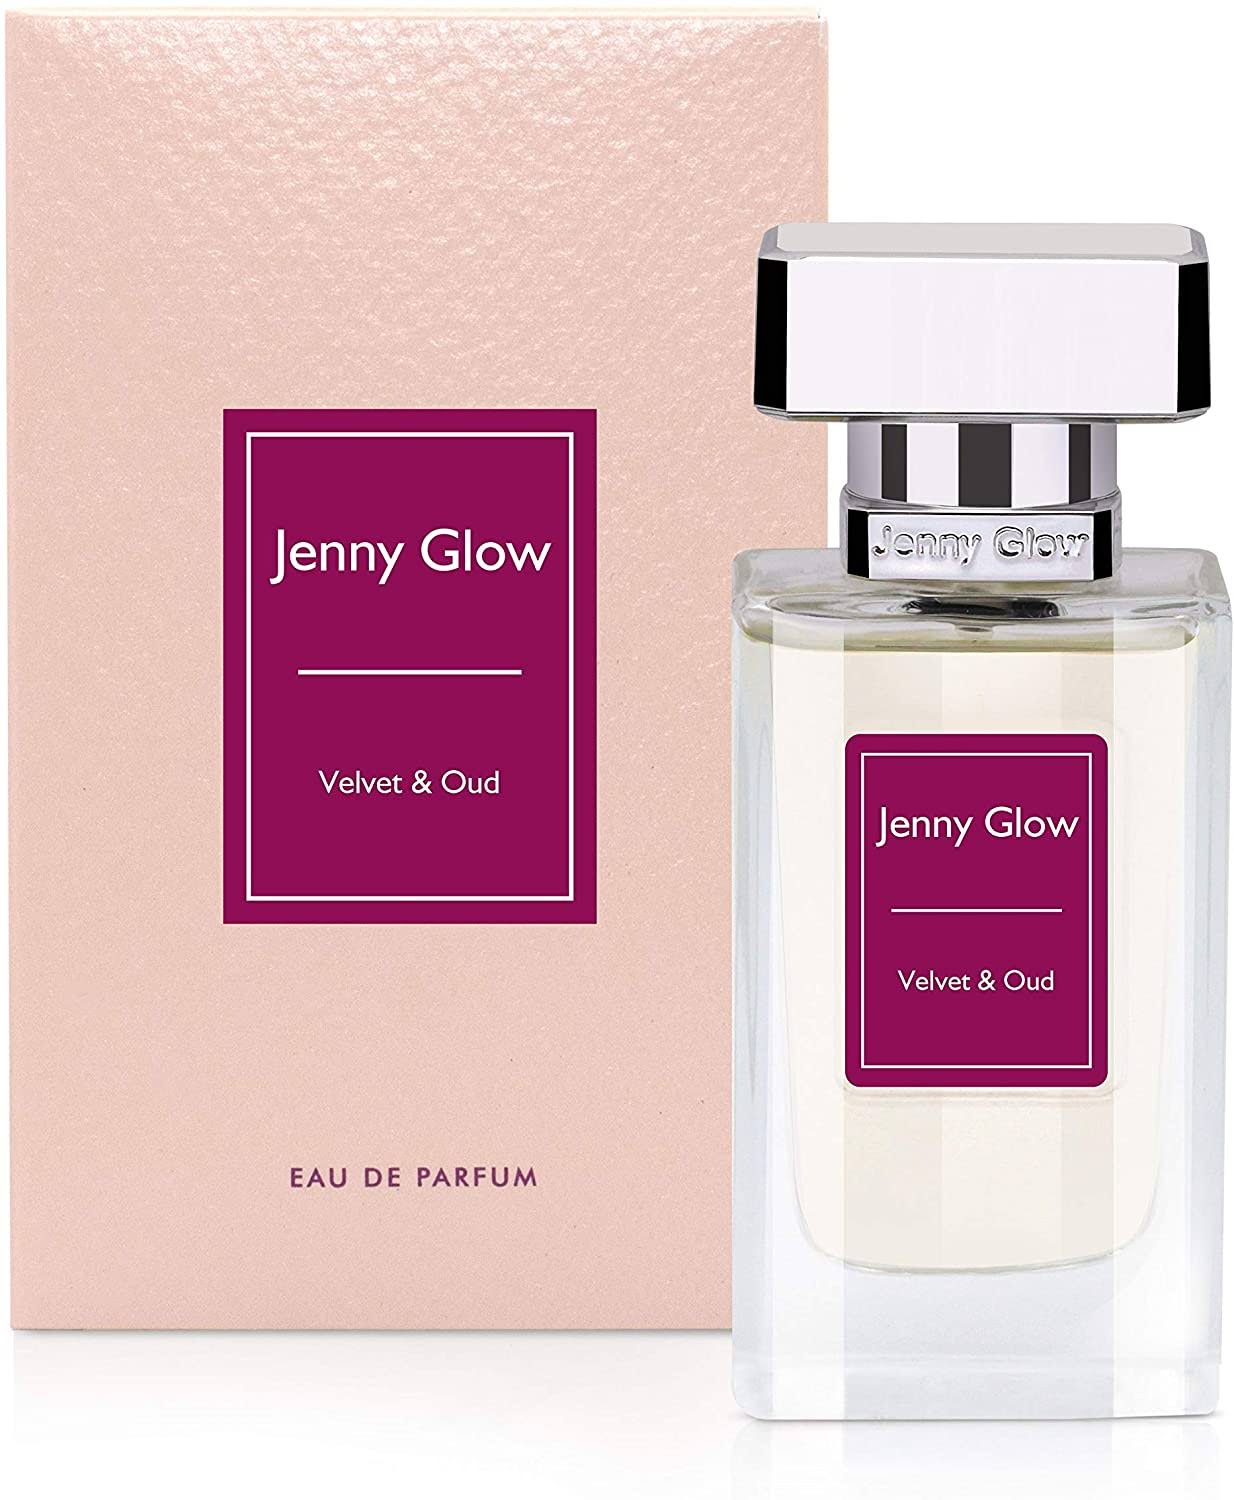 Jenny Glow Velvet & Oud - Eau de Parfum 30 ml